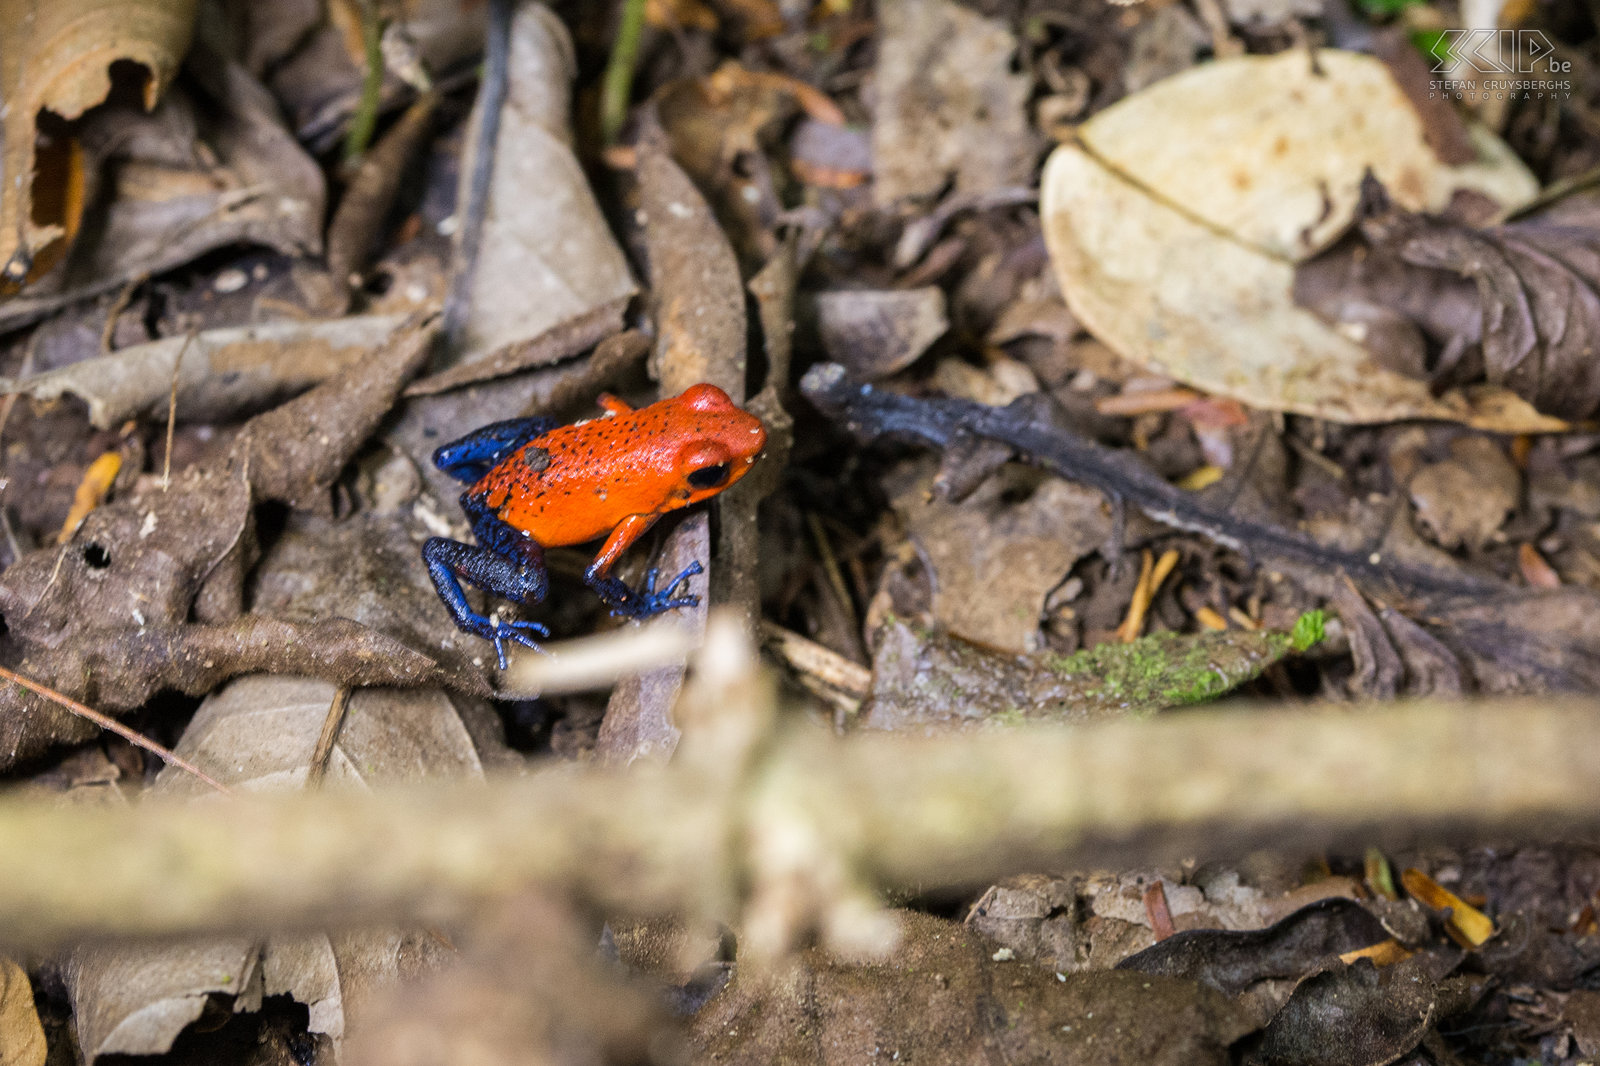 La Selva - Aardbeikikker De aardbeikikker (strawberry poison-dart frog, oophaga pumilio of dendrobates pumilio) is een zeer kleine (1.7-2cm) en kleurrijke maar giftige kikker die voornamelijk voorkomt in vochtige laagland wouden. Stefan Cruysberghs